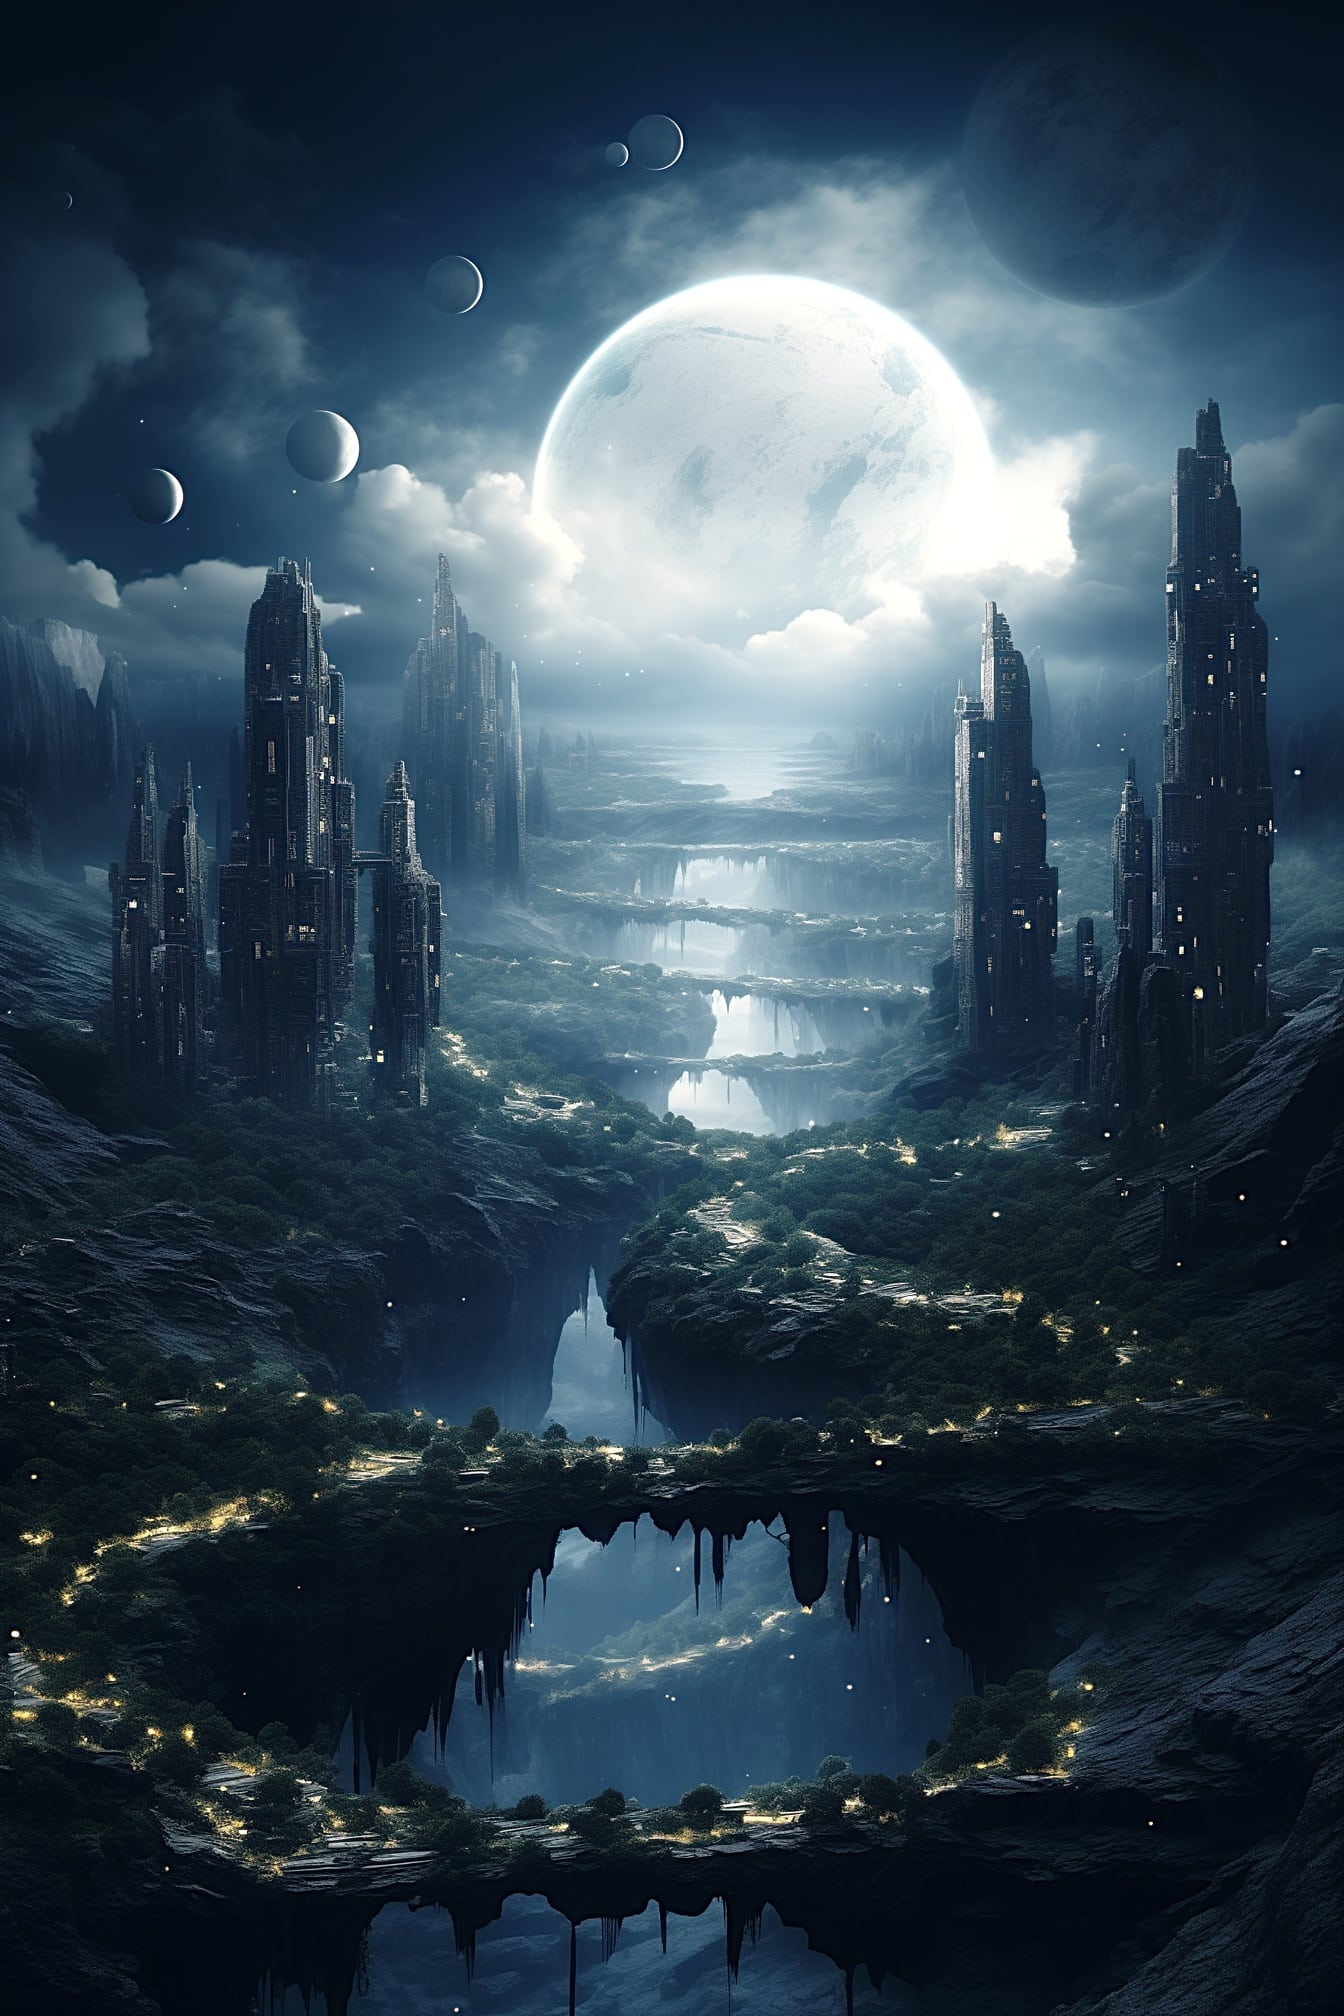 Oraș lunar magic pe planeta de vis cu multe luni pe cer noaptea